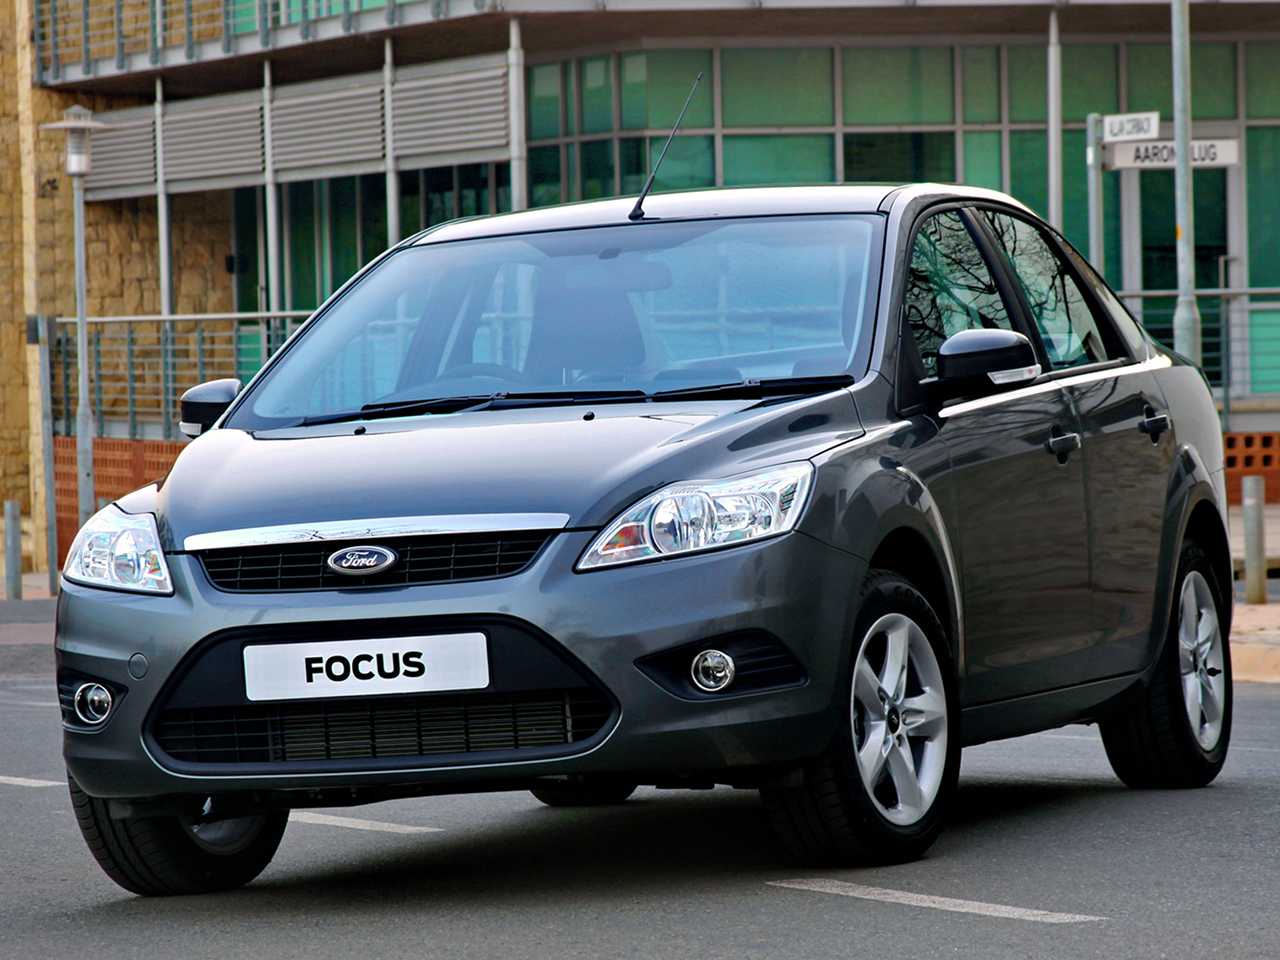 Купить форд фокус 2010. Ford Focus 2 2010. Форд фокус 2 седан 2010. Ford Ford Focus 2010. Ford Focus 2010 седан.